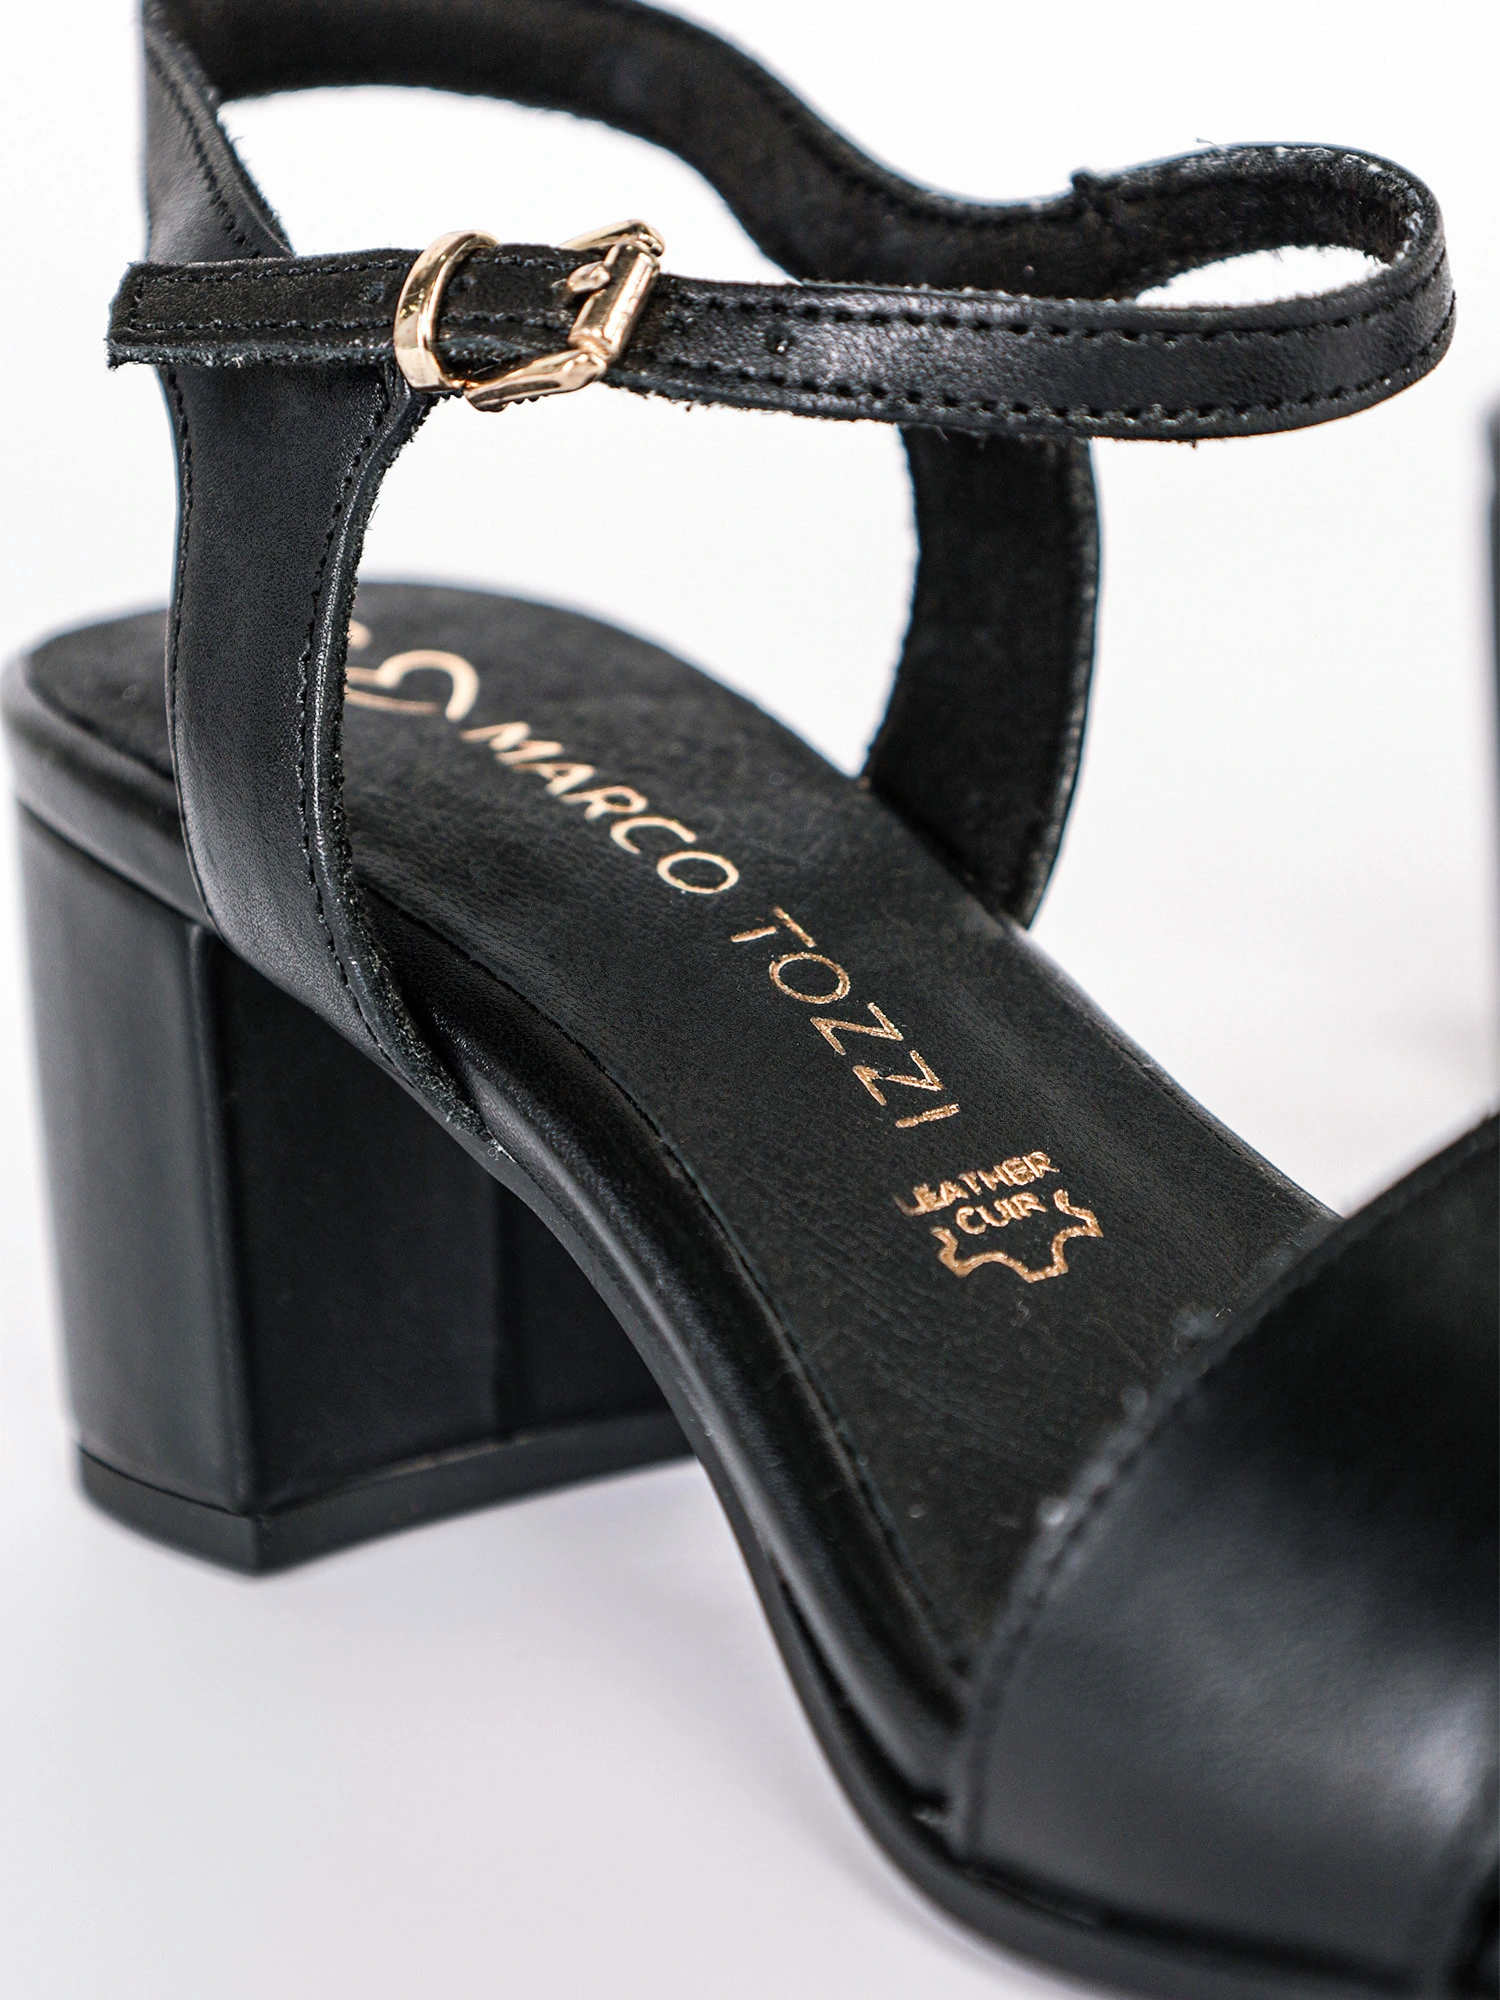 Босоножки черного цвета на высоком блочном каблуке